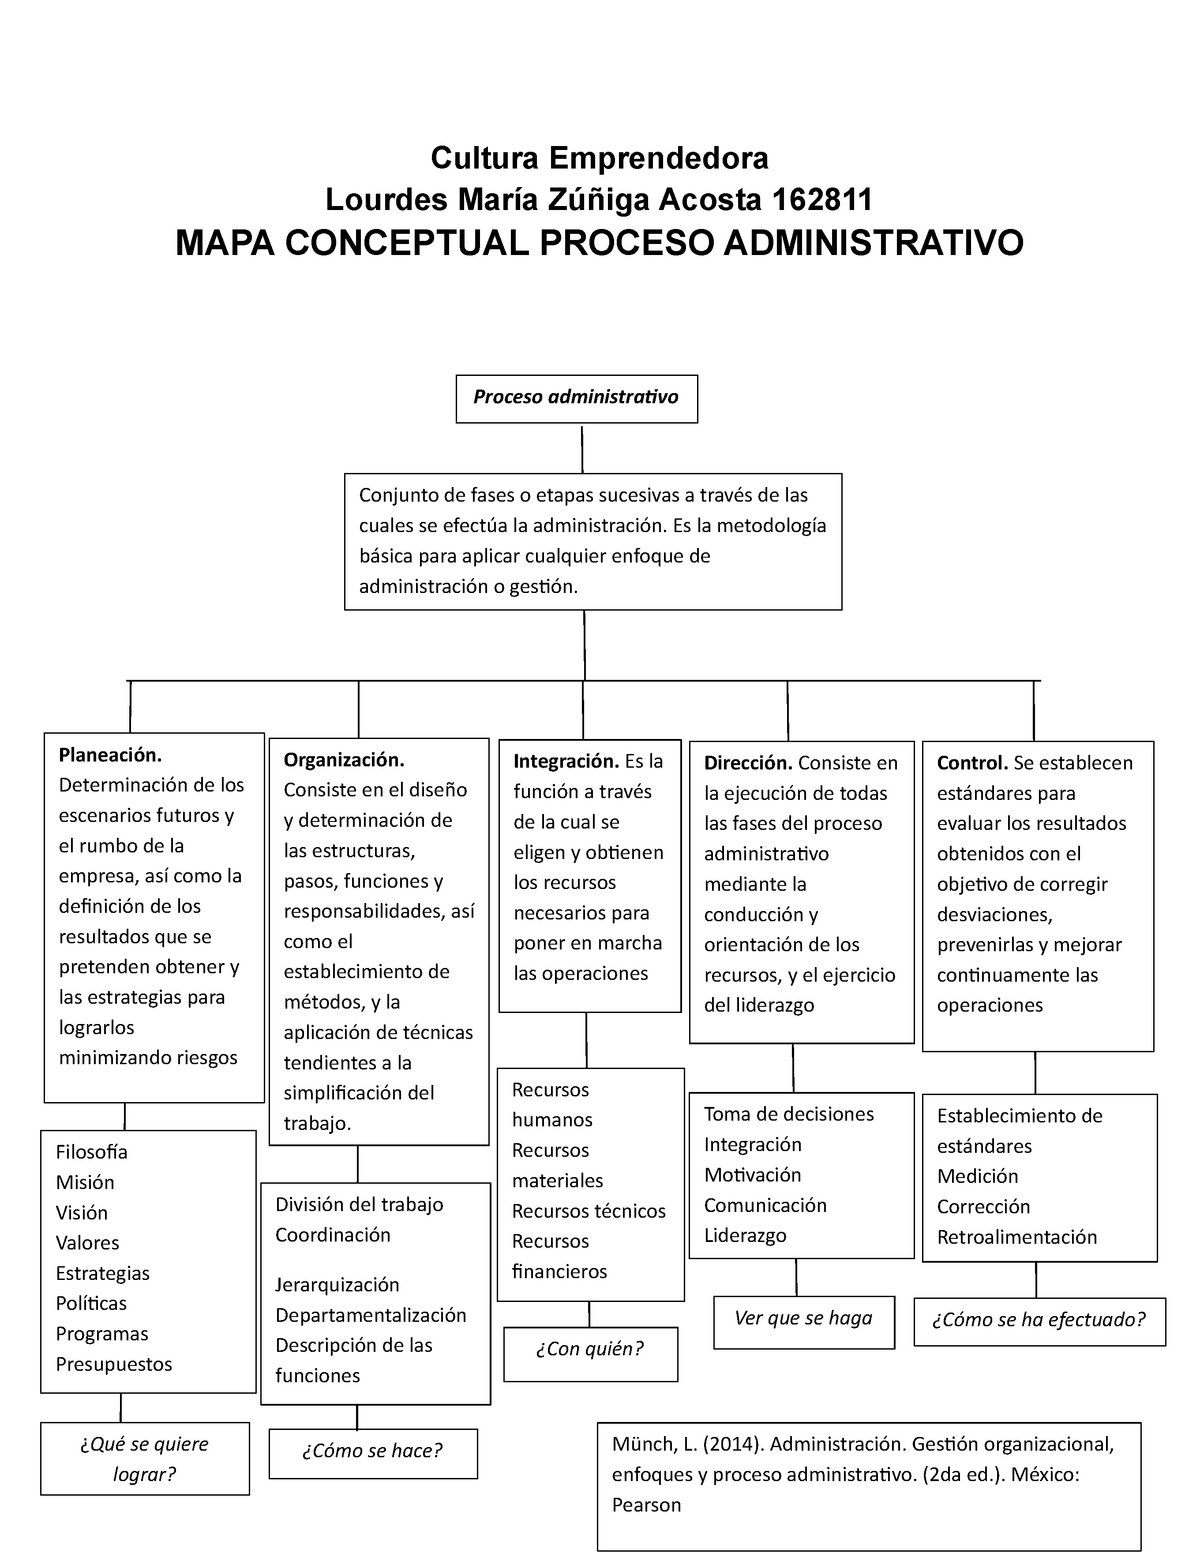 Ai Mapa Conceptual Sobre Proceso Administrativo Lourdes Zu Iga Acosta Sexiz Pix 2017